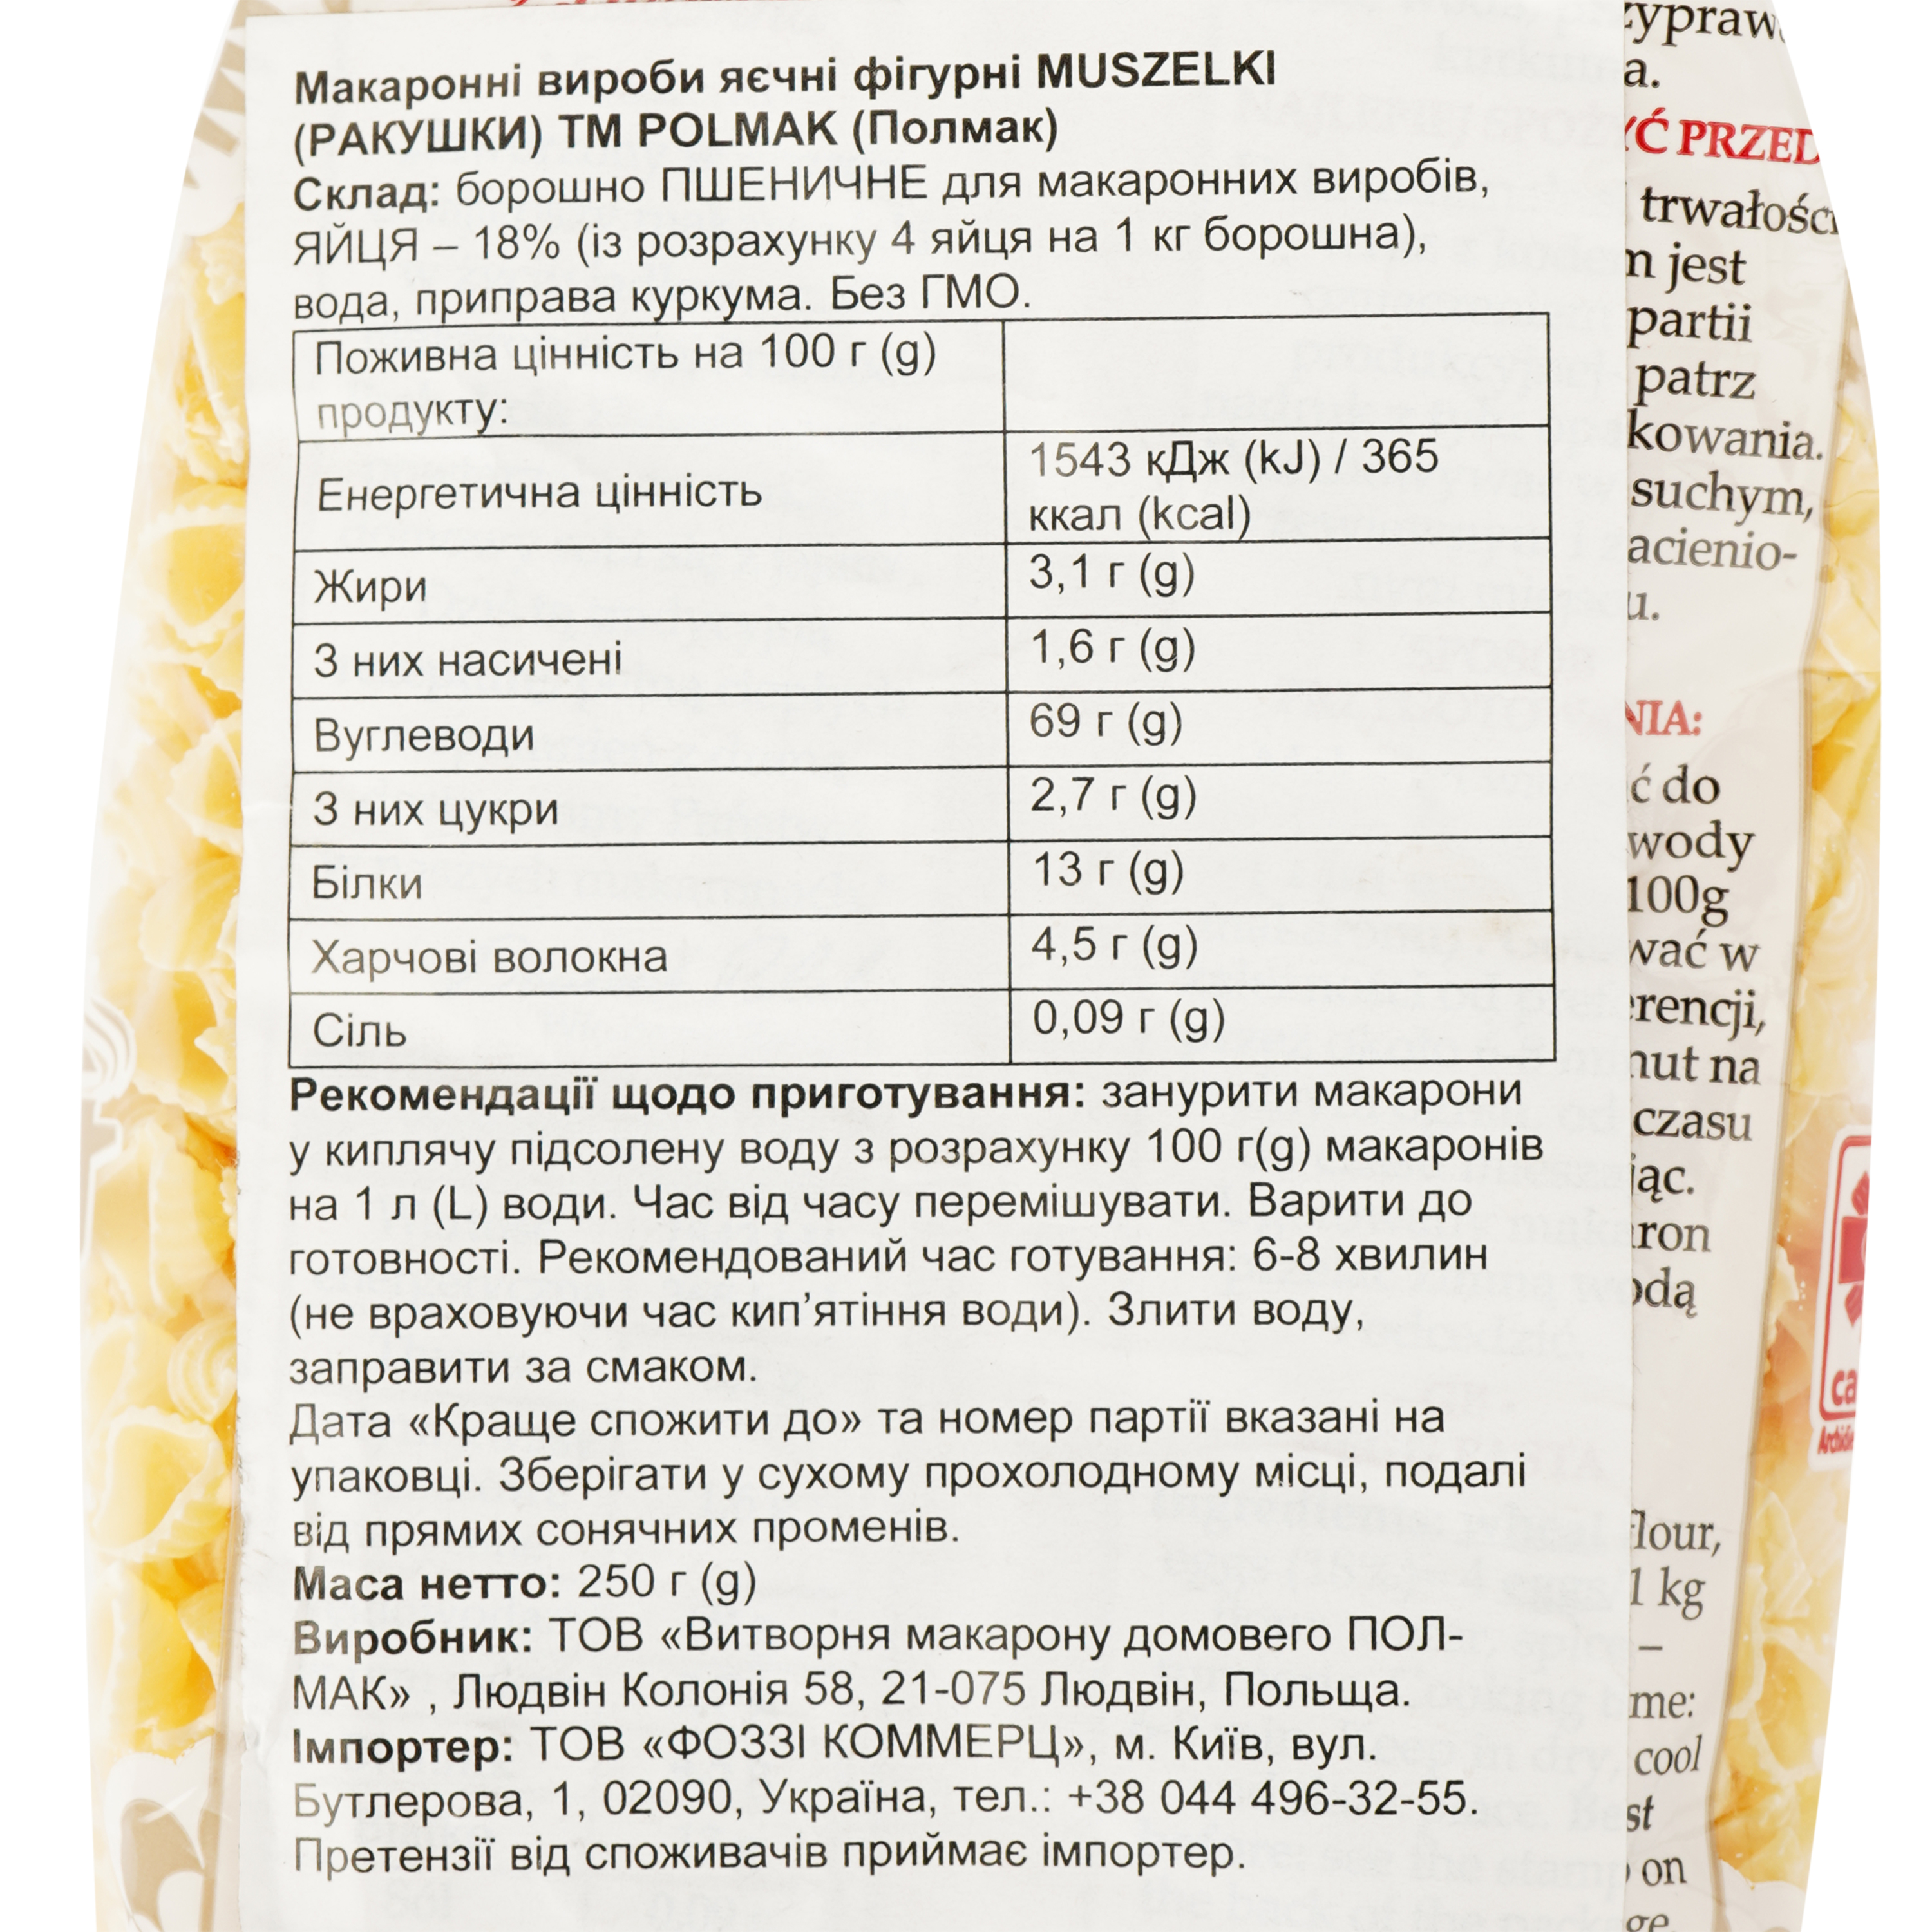 Изделия макаронные Polmak Muszelki фигурные яичные, 250 г (920051) - фото 3